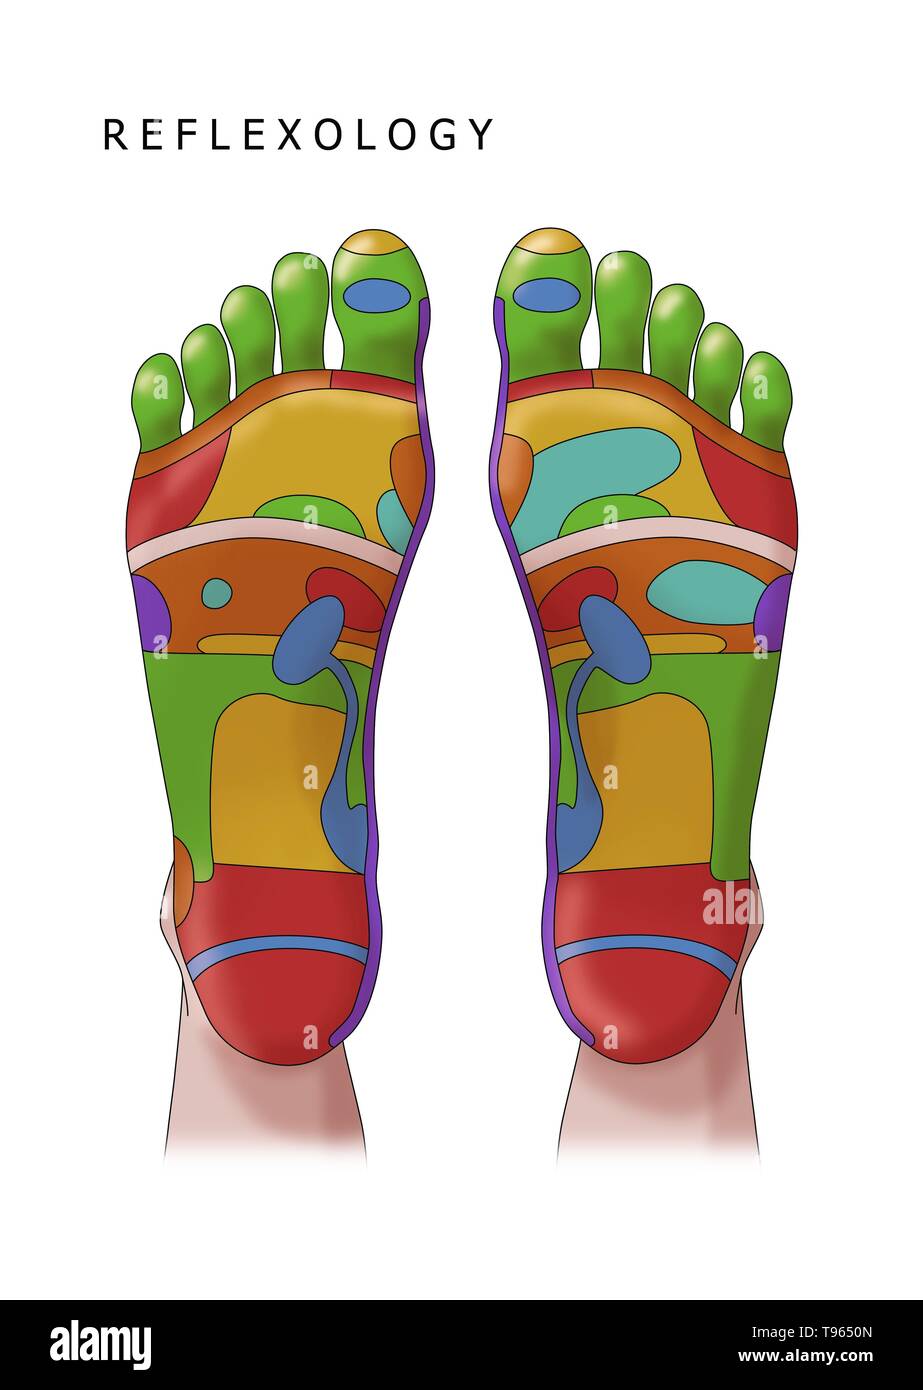 Abbildung der Füße, Fuß-Reflexzonenmassage Zonen. Eine Fußreflexzonenmassage ist eine Form der alternativen Medizin, in dem die Zonen der Füße geglaubt werden in verschiedenen Teilen des Körpers zu entsprechen. Stockfoto